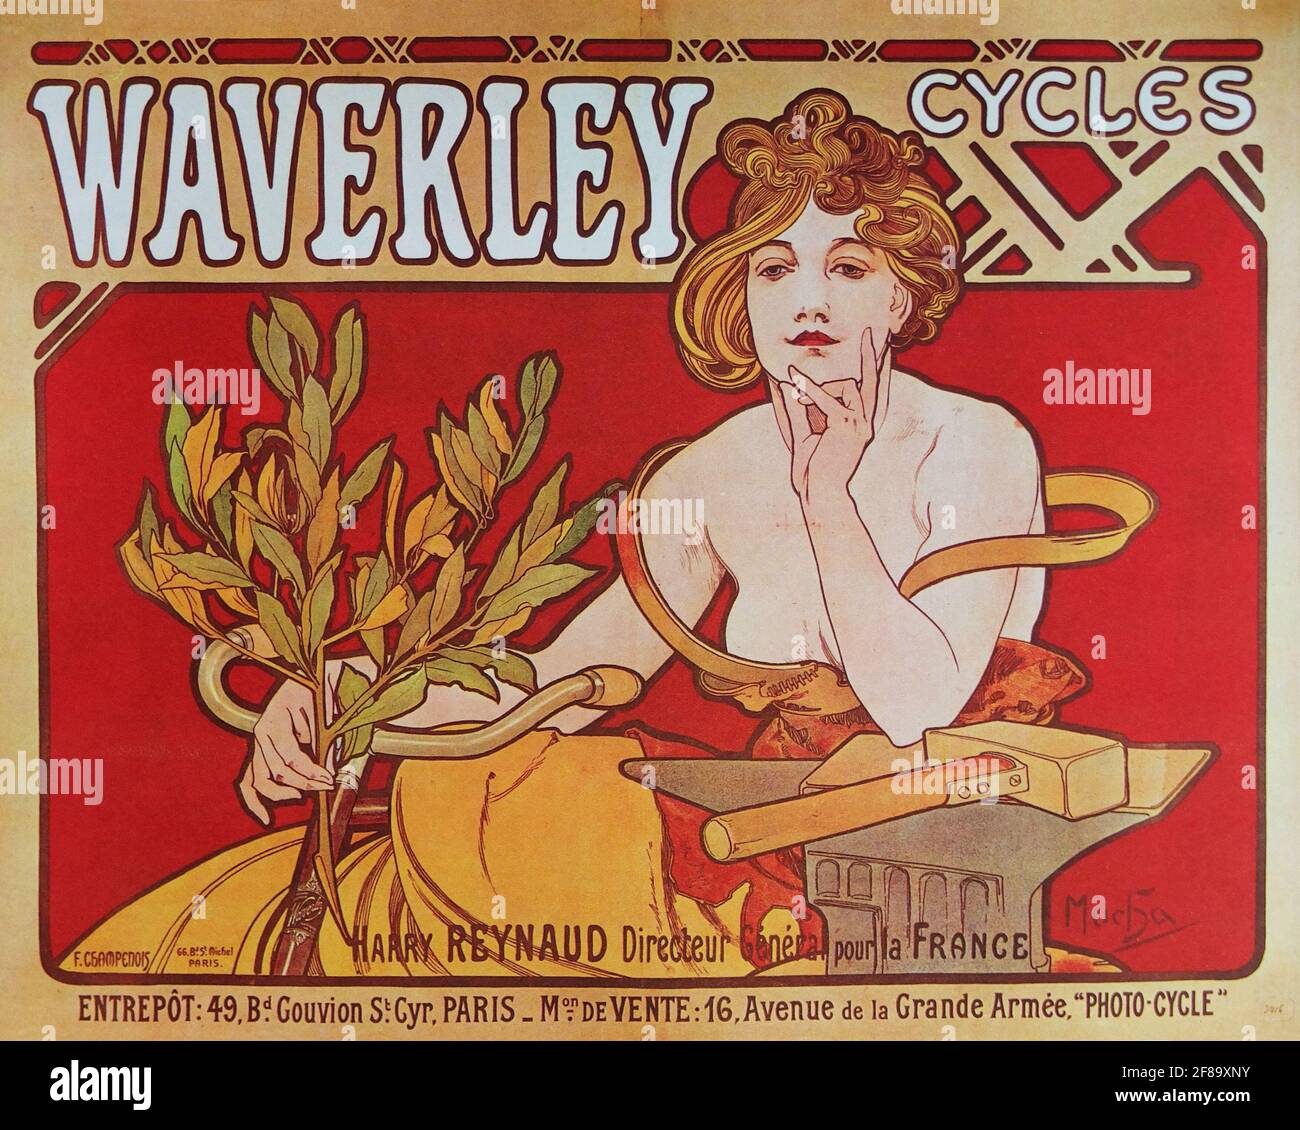 Ciclos Waverley affiche Mucha 1898 – Art Nouveau de Alphonse Mucha Foto de stock